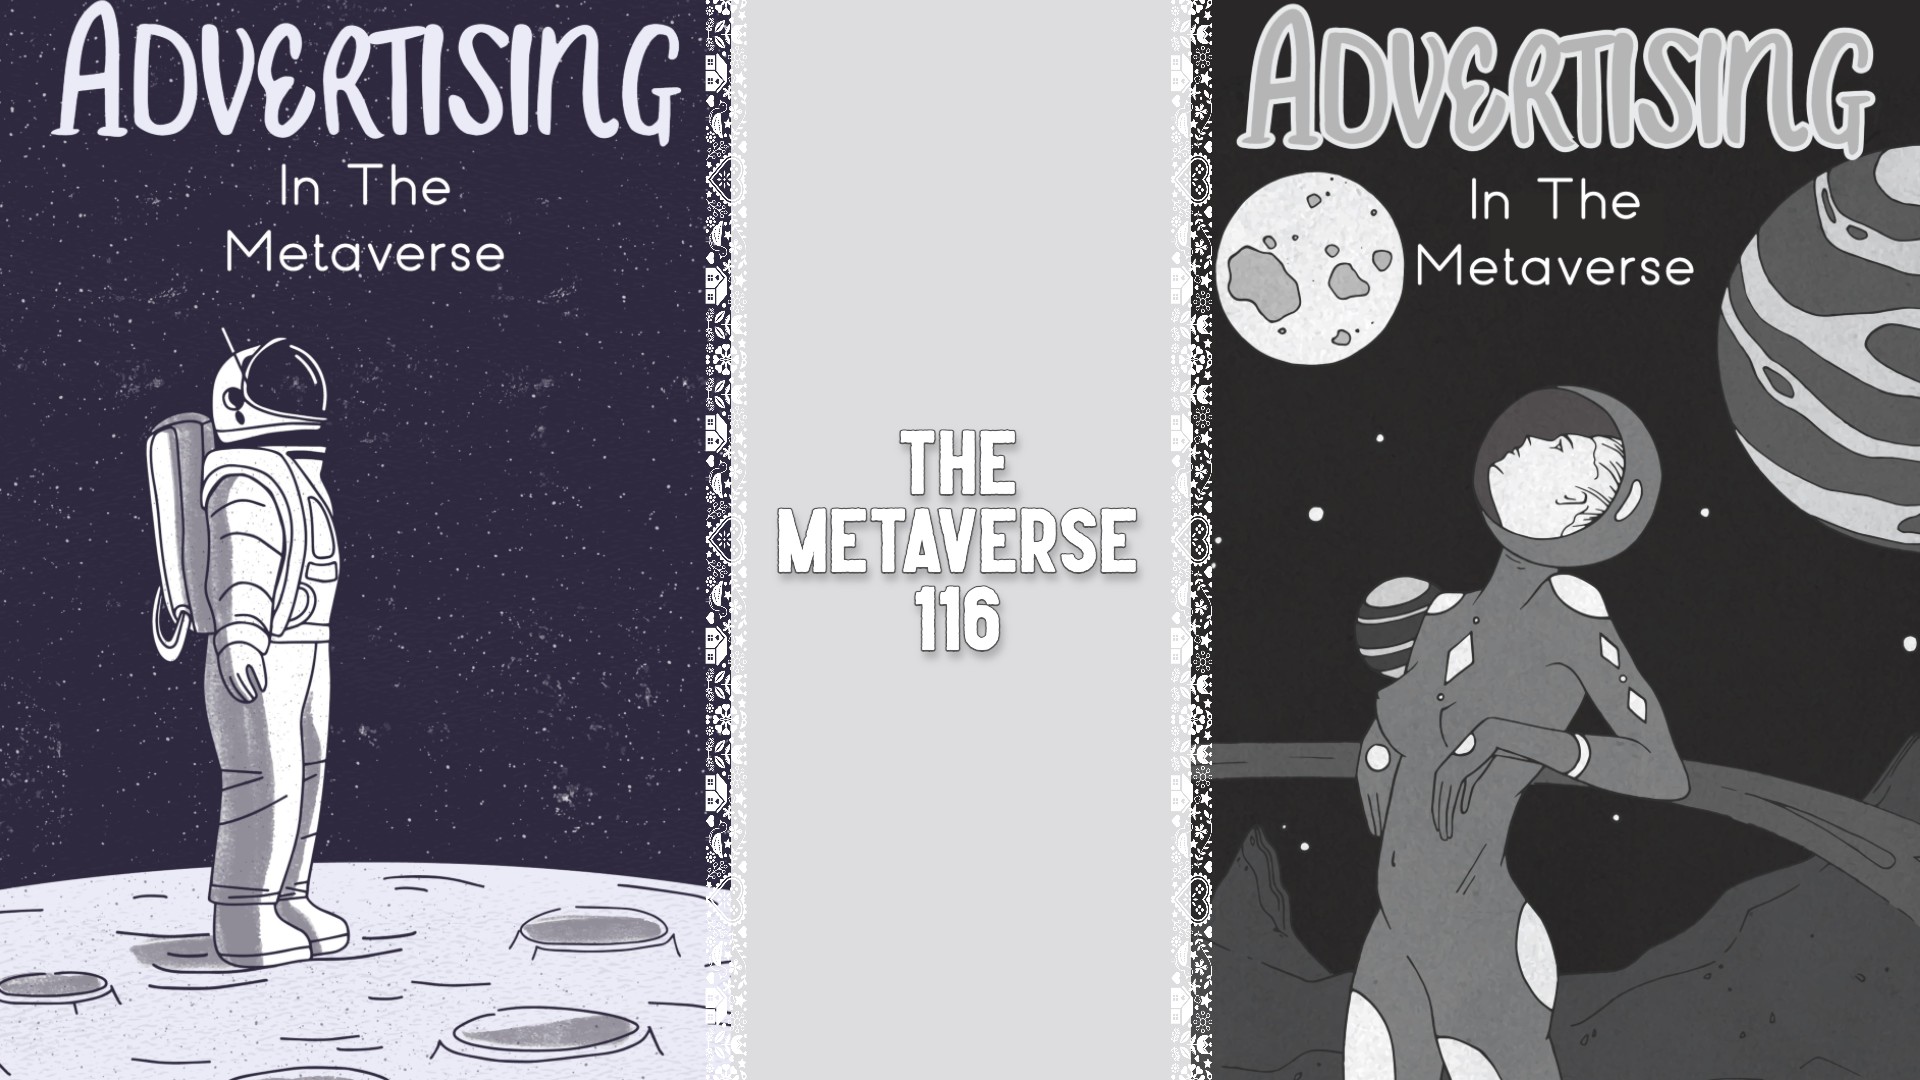 The Metaverse 116: Advertising in the Metaverse